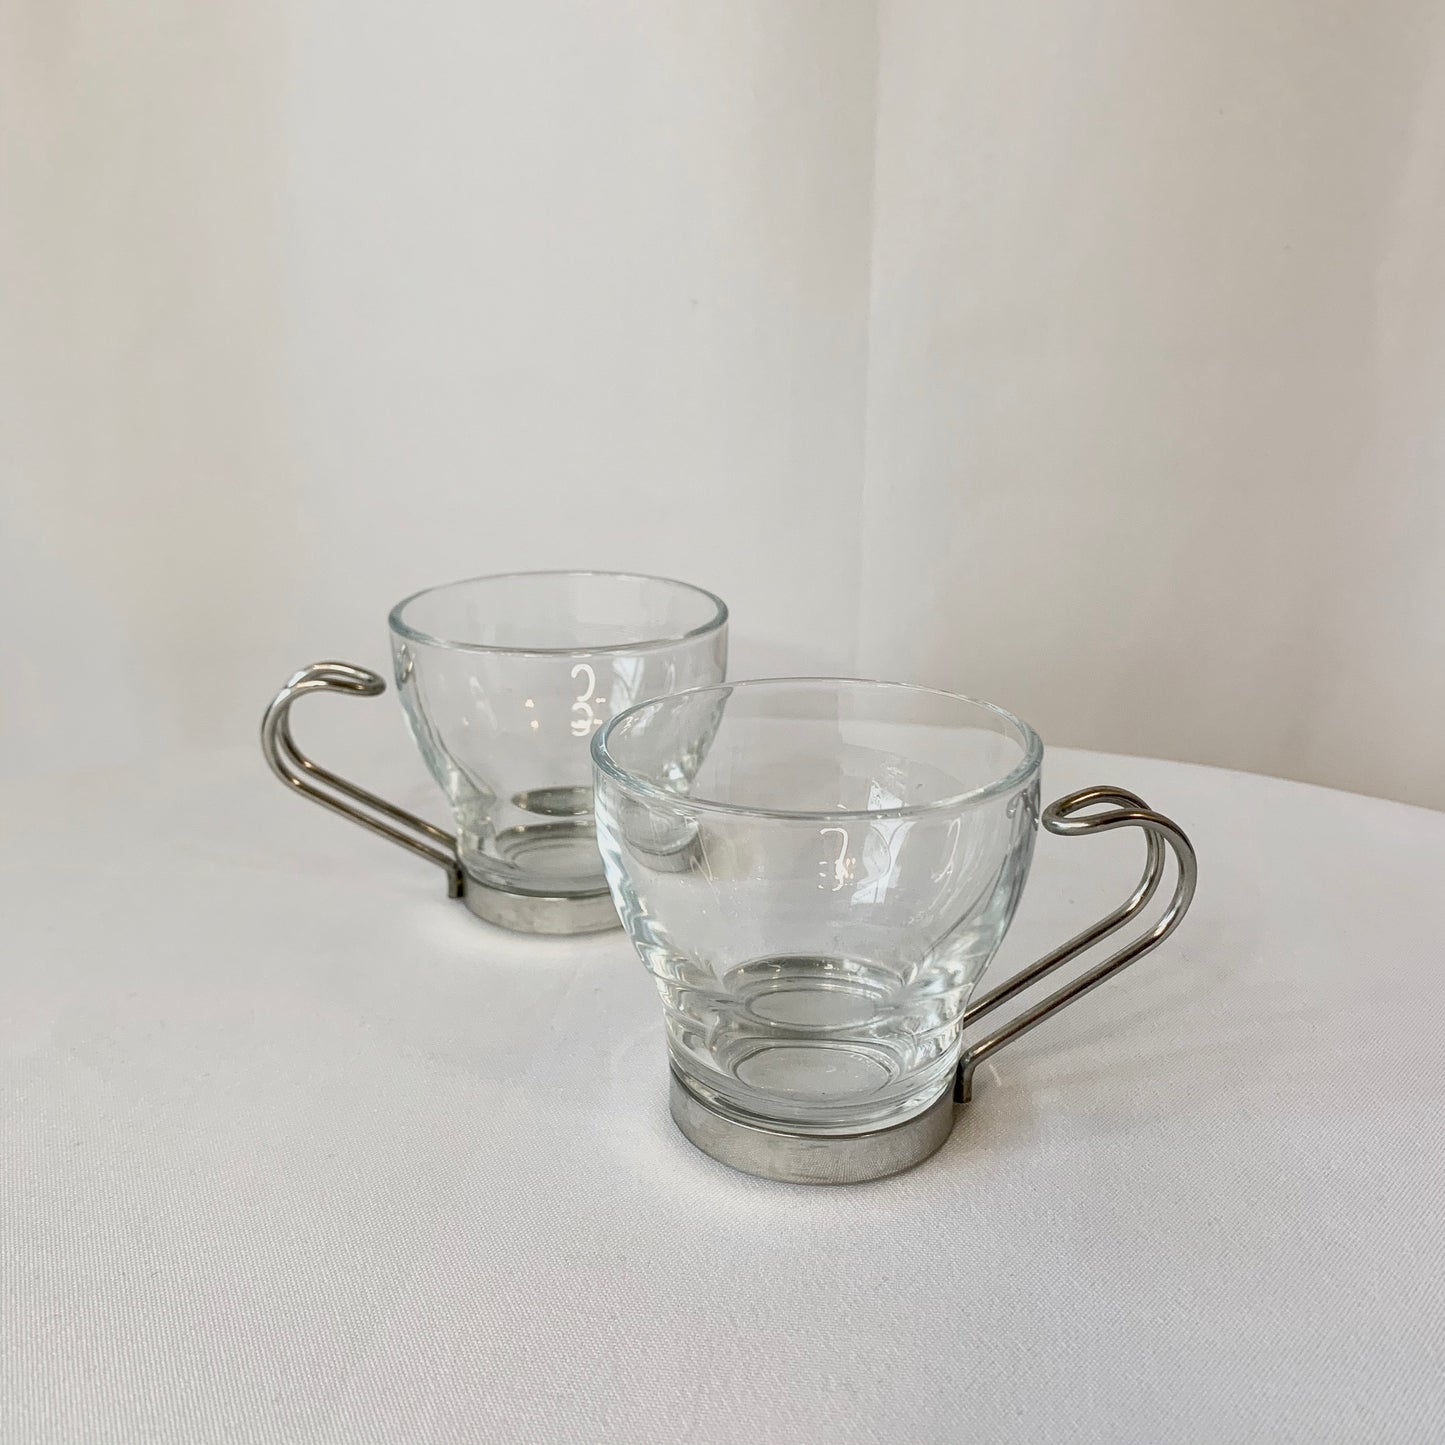 Vintage Espresso Cups - set of 2